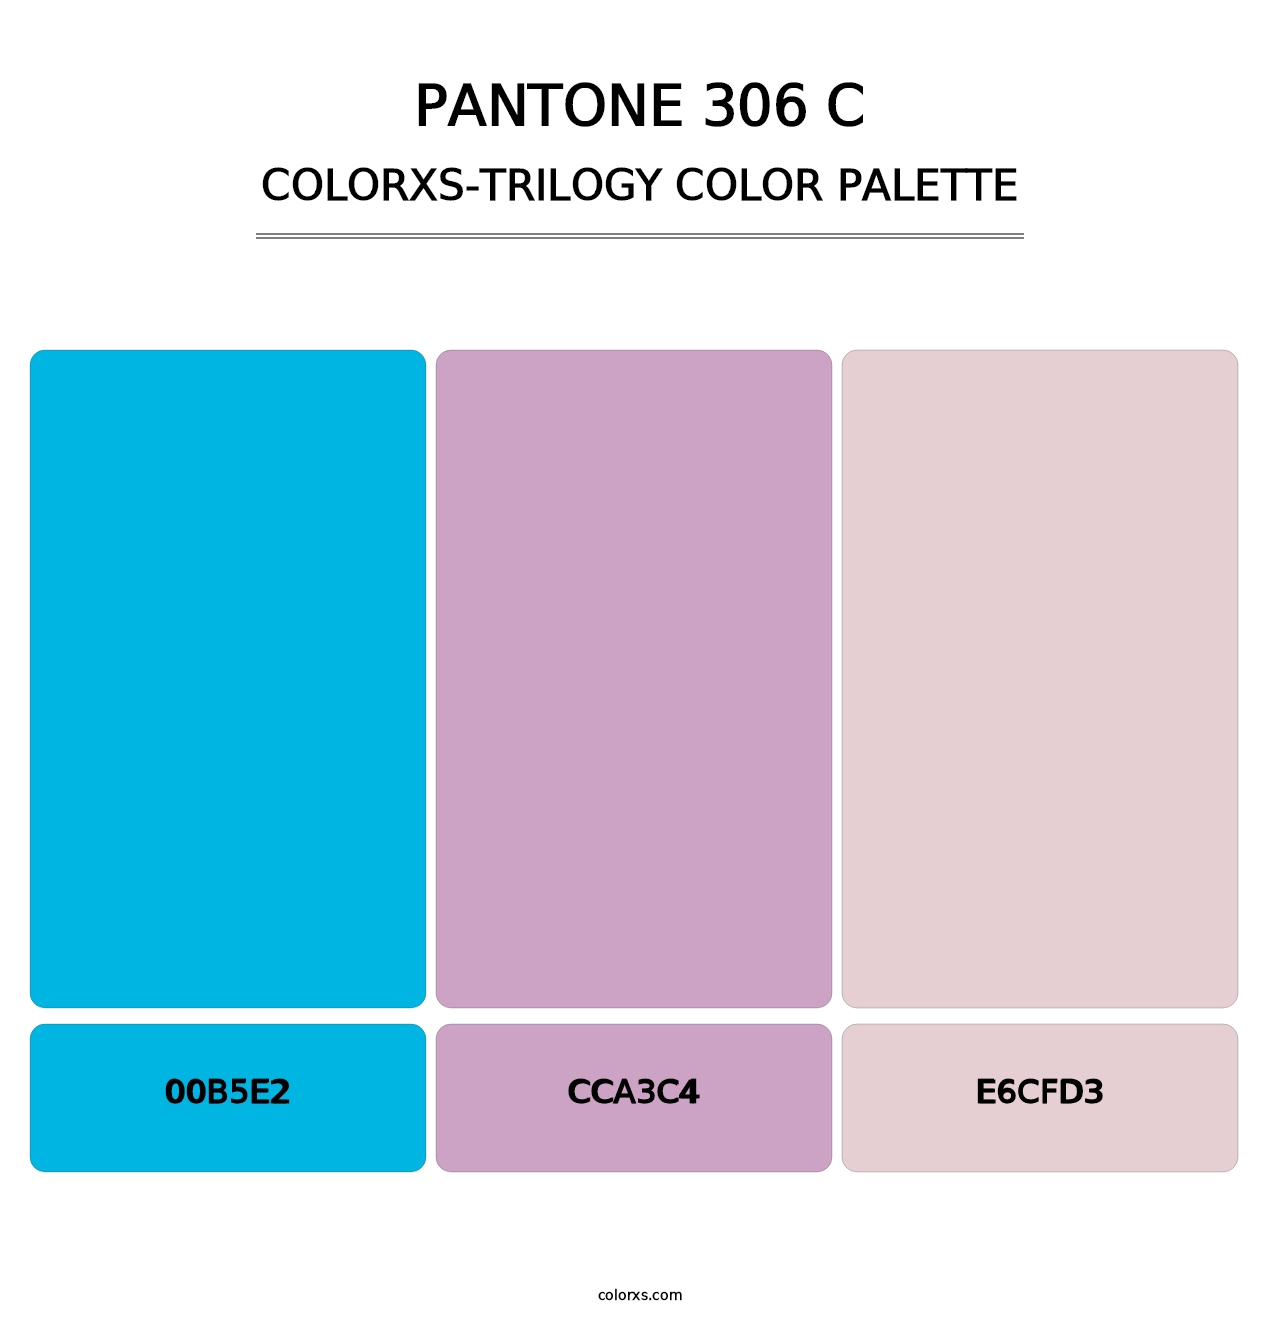 PANTONE 306 C - Colorxs Trilogy Palette